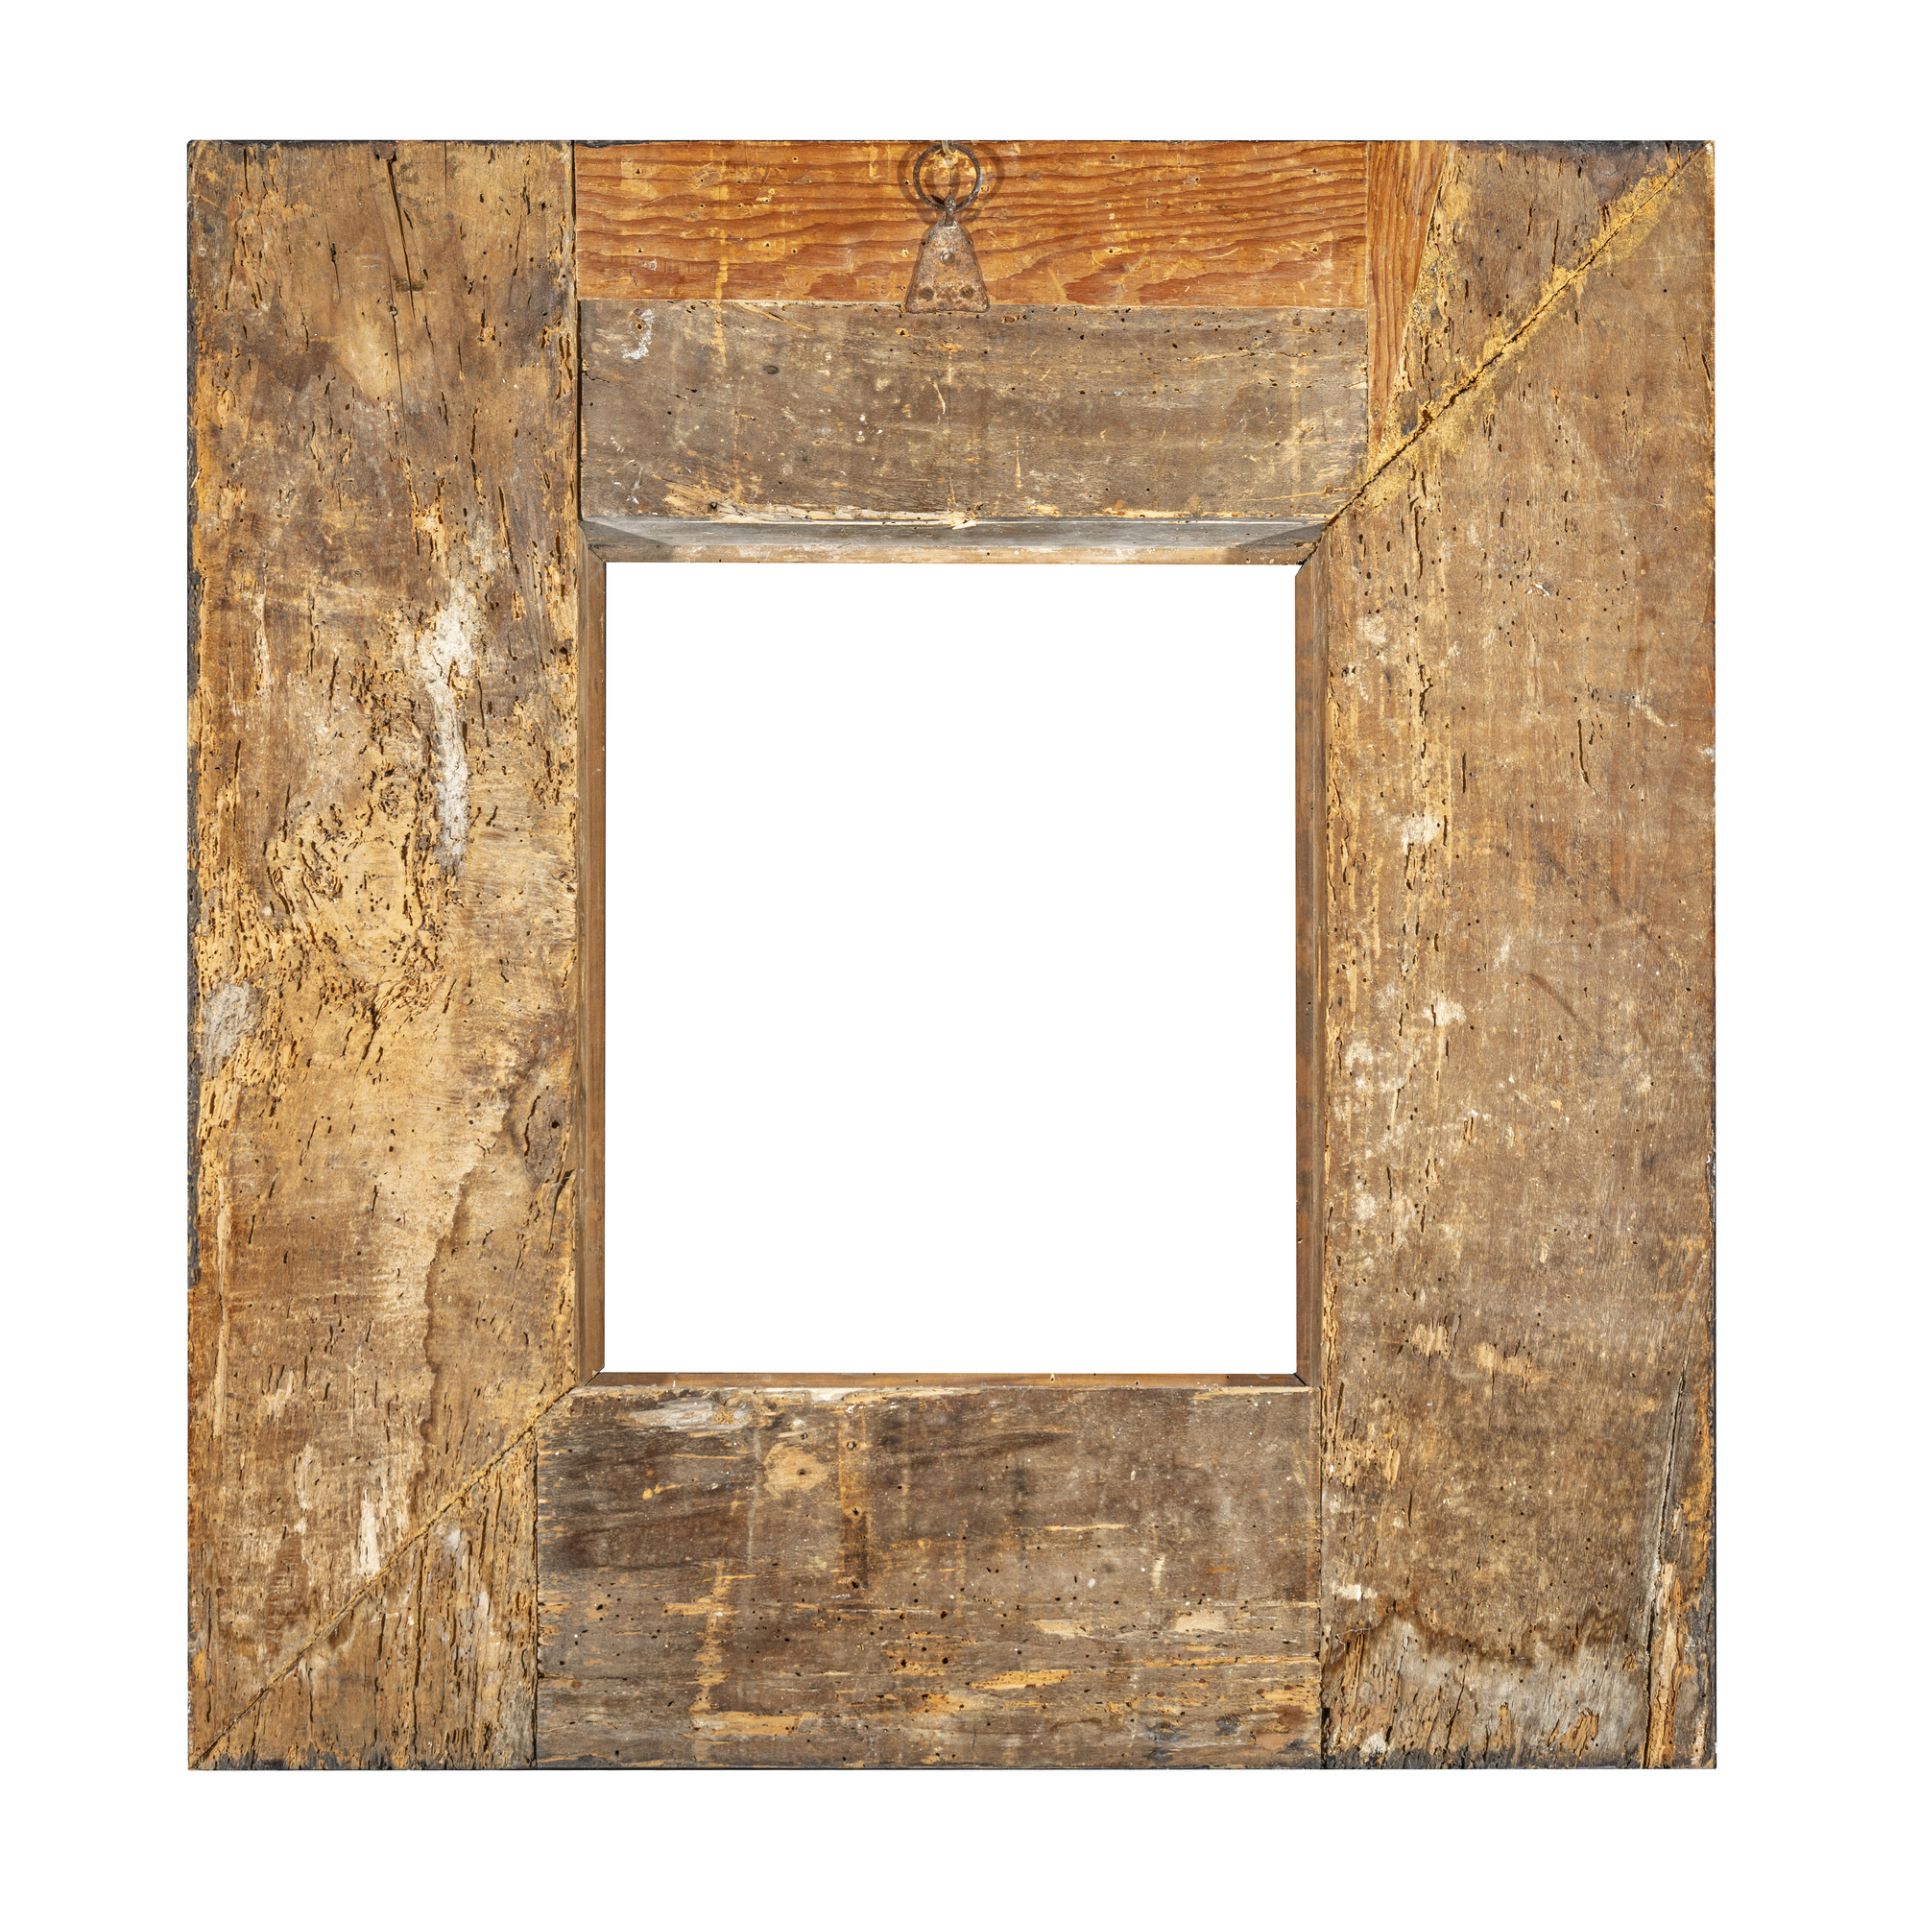 Cornice guilloche in legno ebanizzato - Image 2 of 3